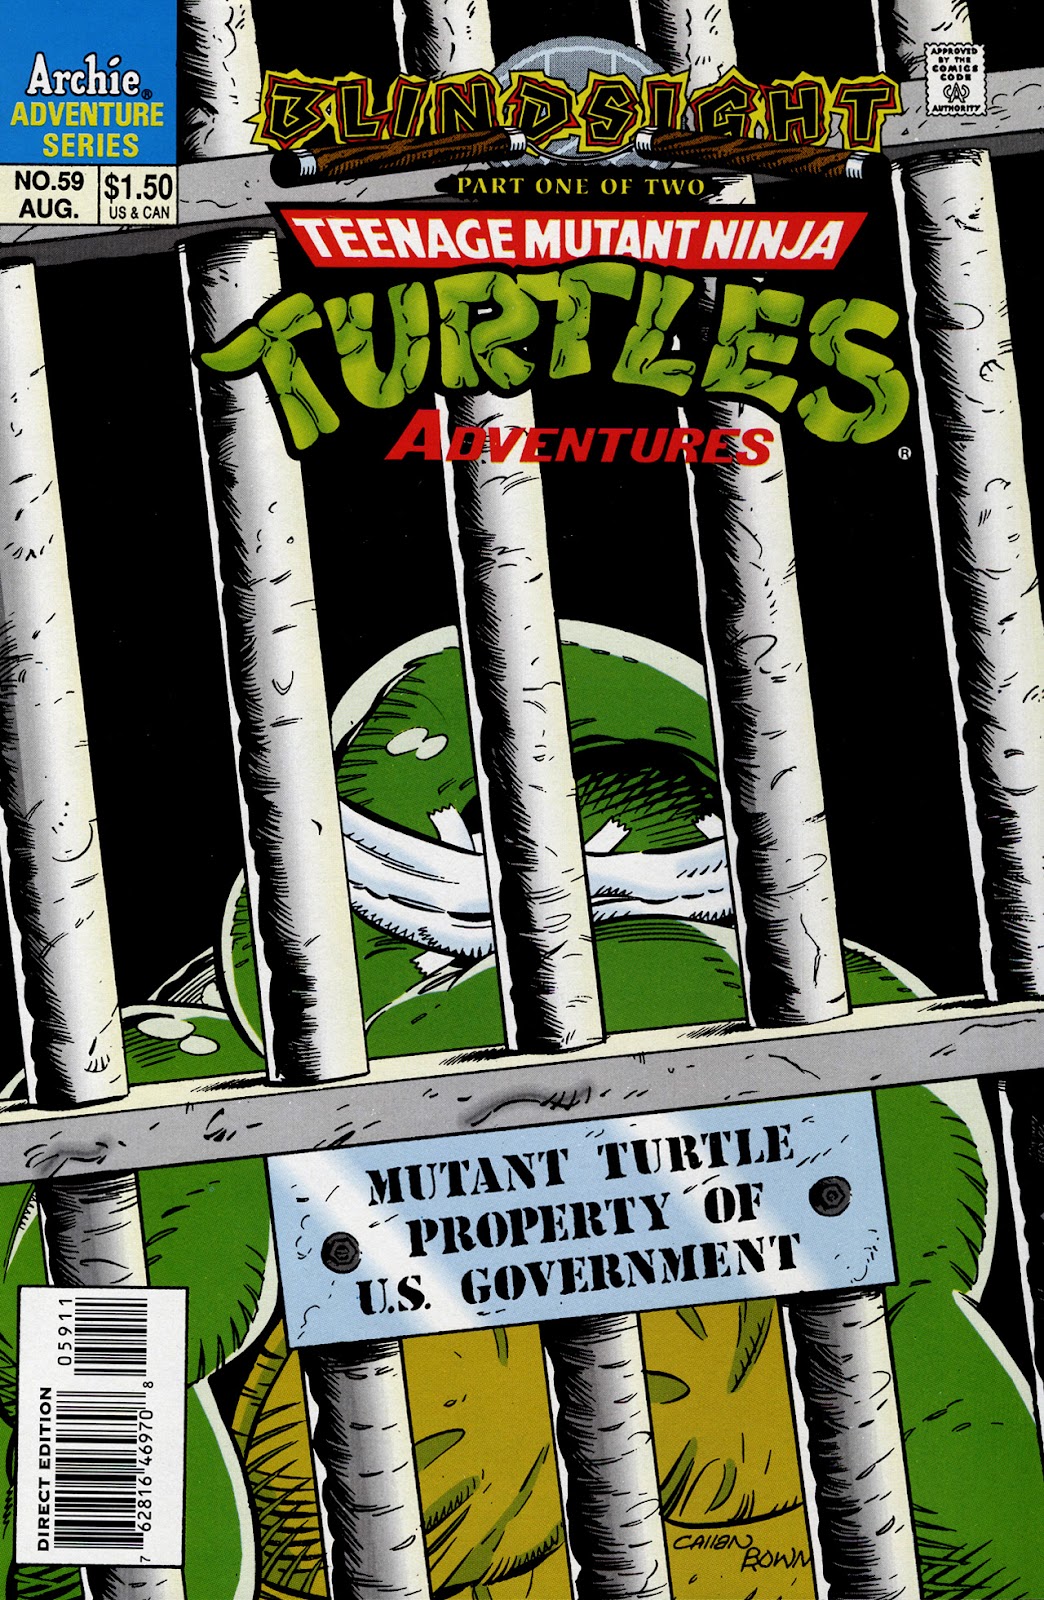 Teenage Mutant Ninja Turtles Adventures (1989) issue 59 - Page 1